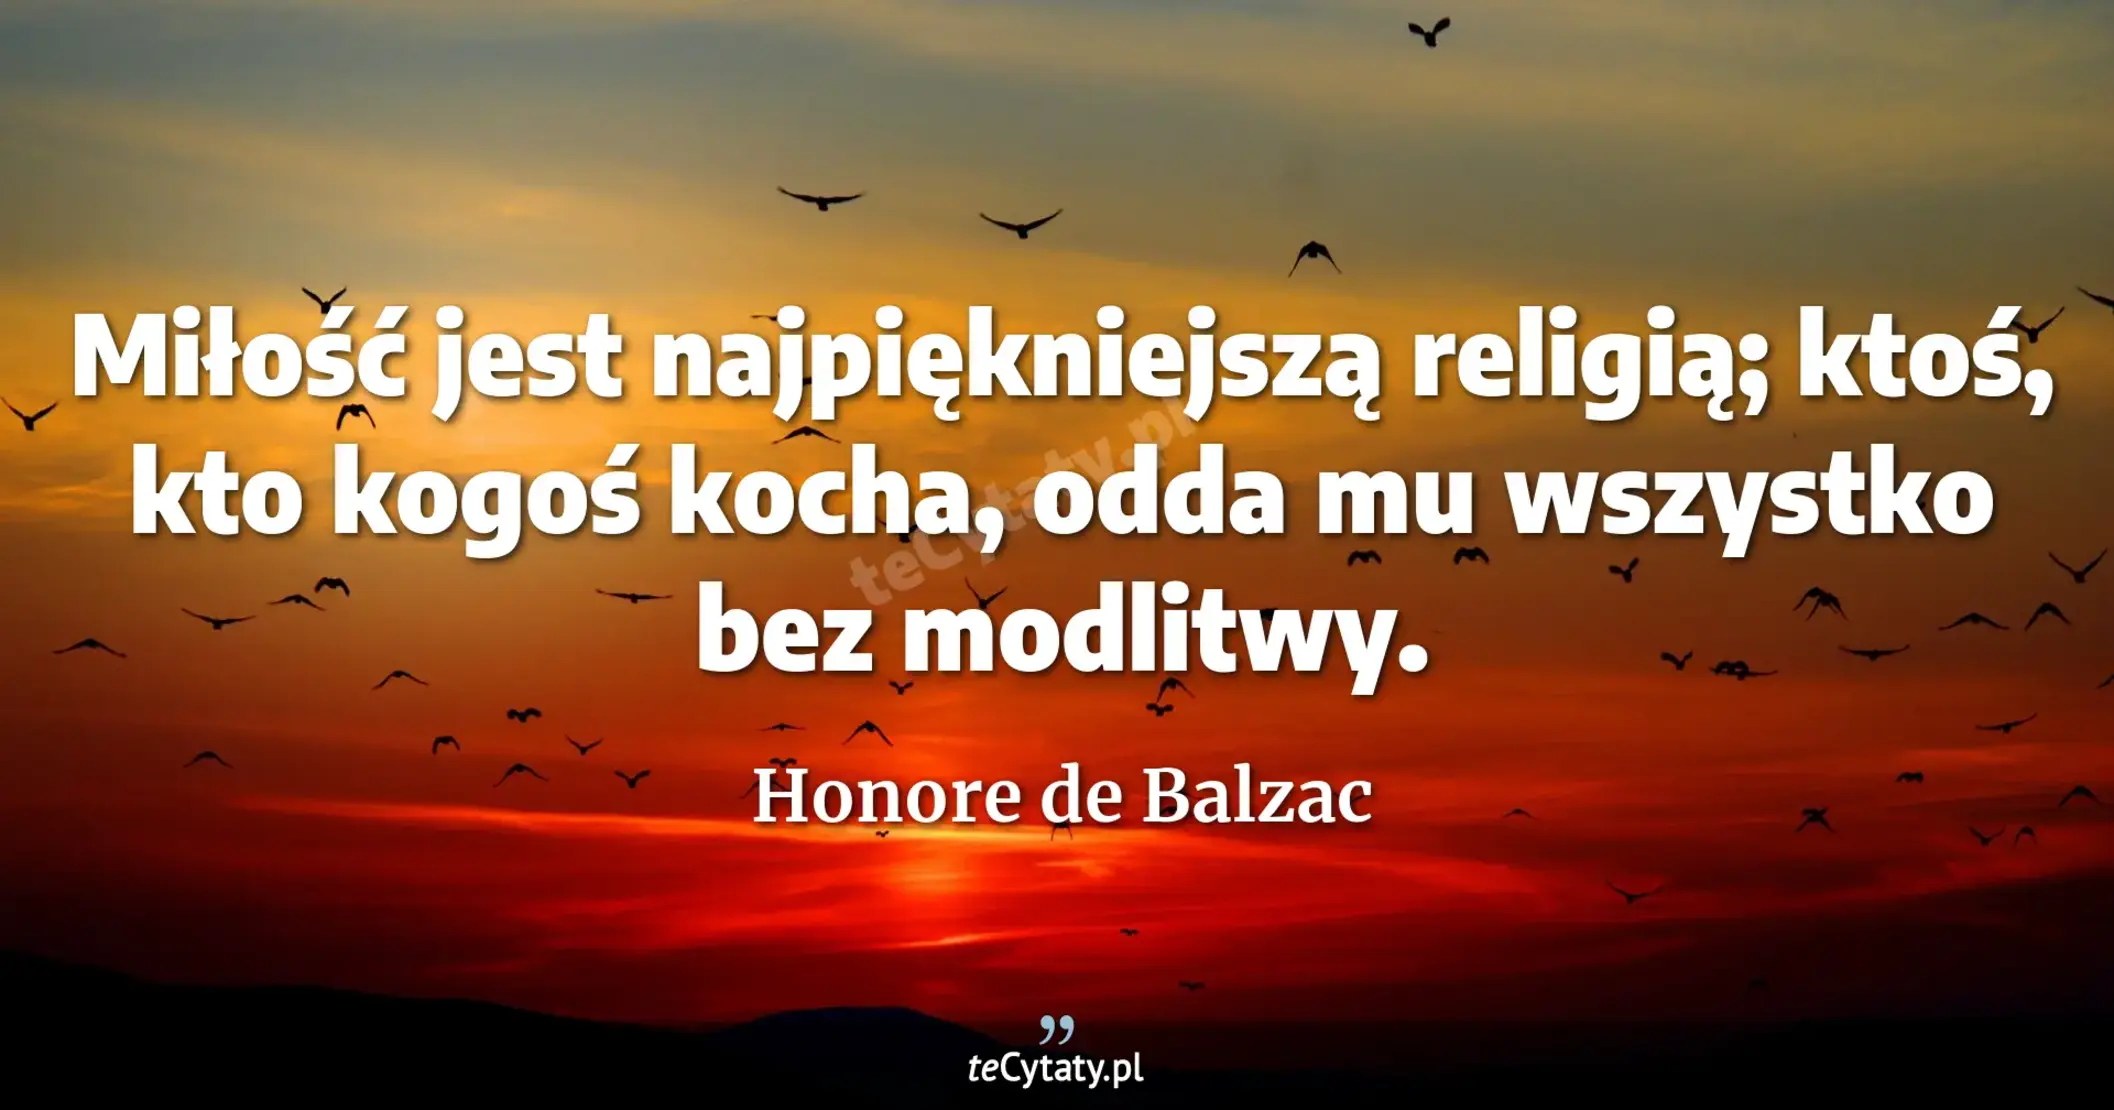 Miłość jest najpiękniejszą religią; ktoś, kto kogoś kocha, odda mu wszystko bez modlitwy. - Honore de Balzac